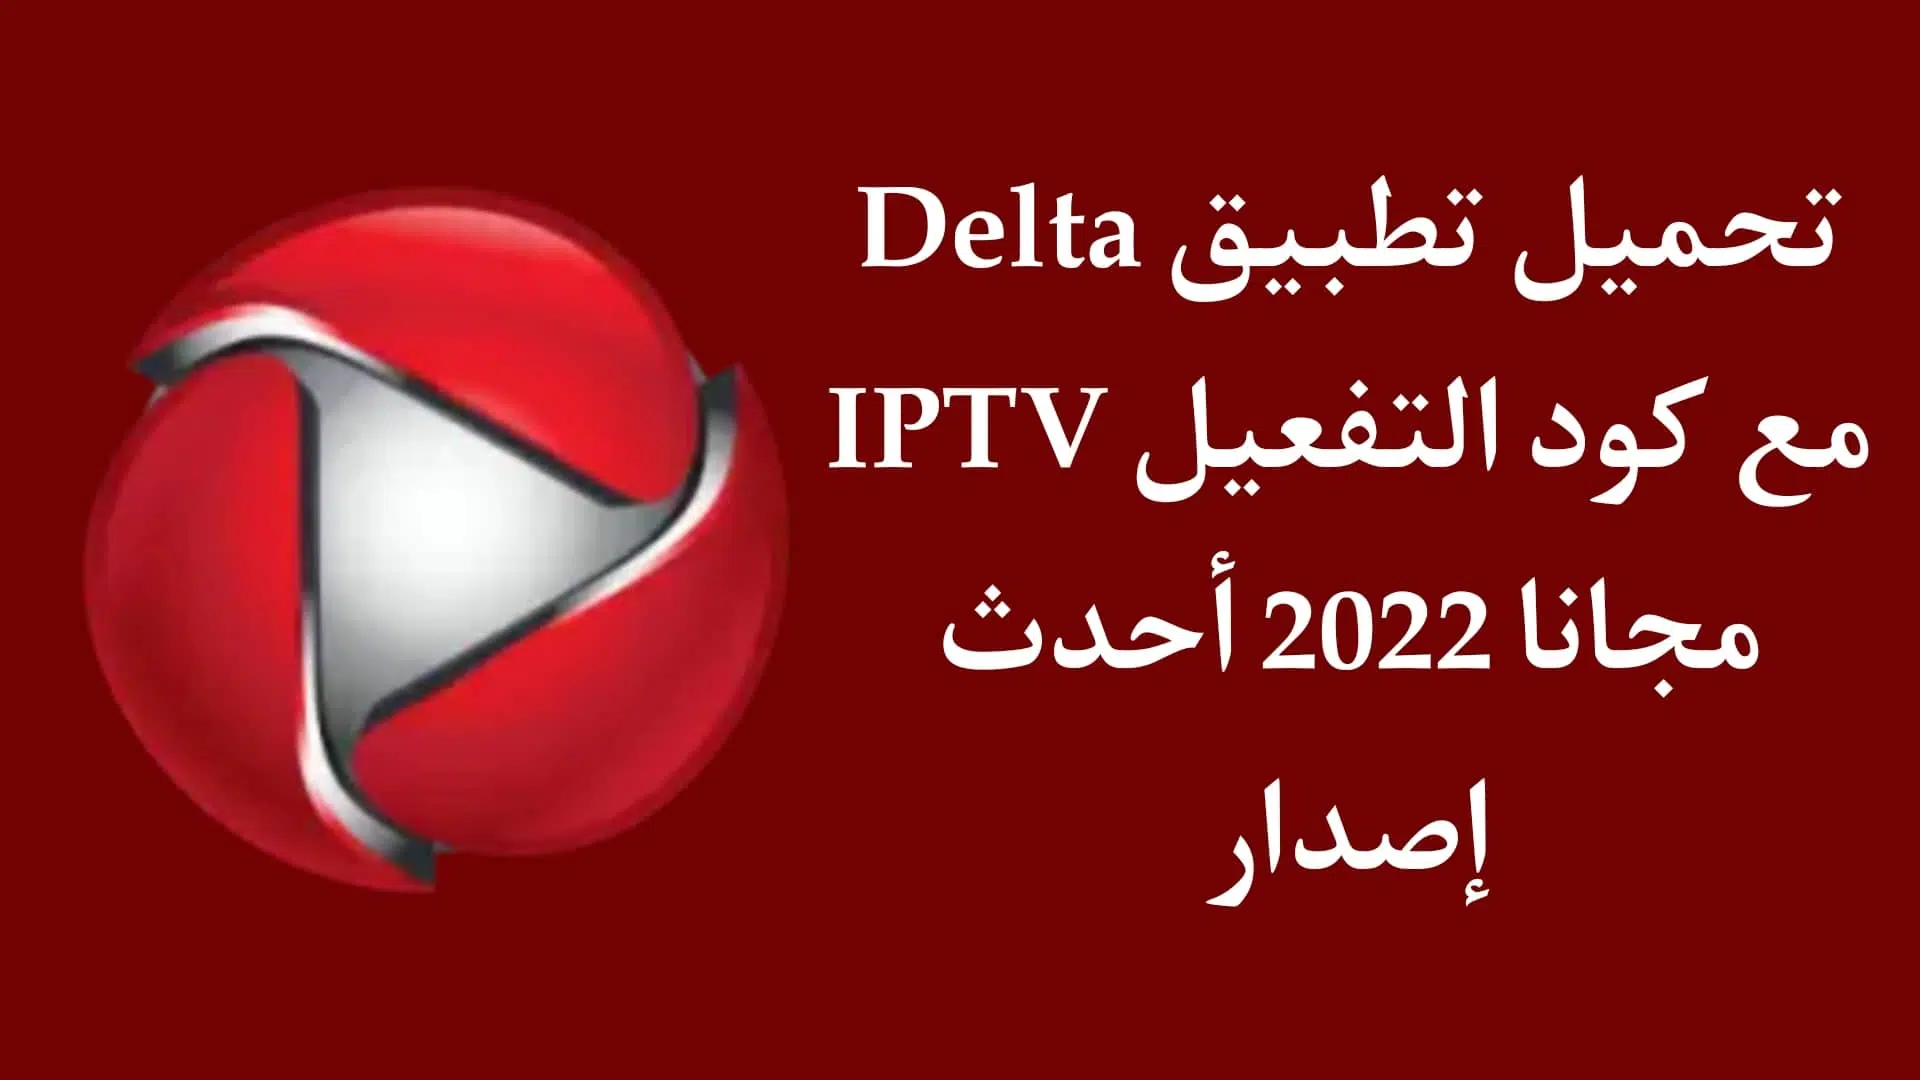 تحميل تطبيق Delta iptv مع كود التفعيل مجانا احدث اصدار 2022